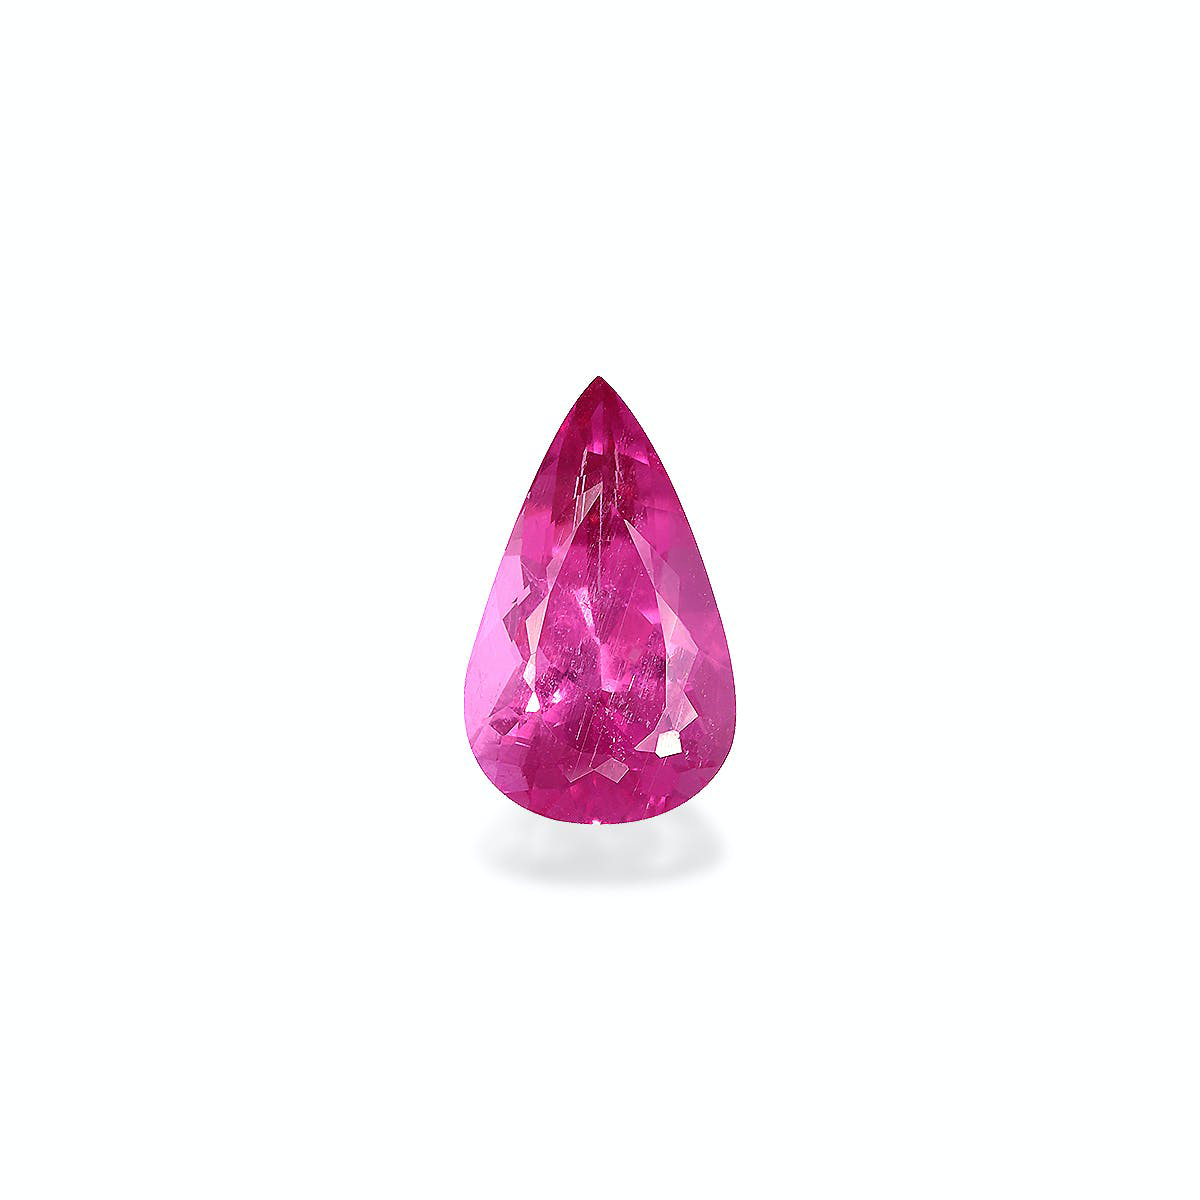 Picture of Fuscia Pink Rubellite Tourmaline 3.62ct (RL1234)